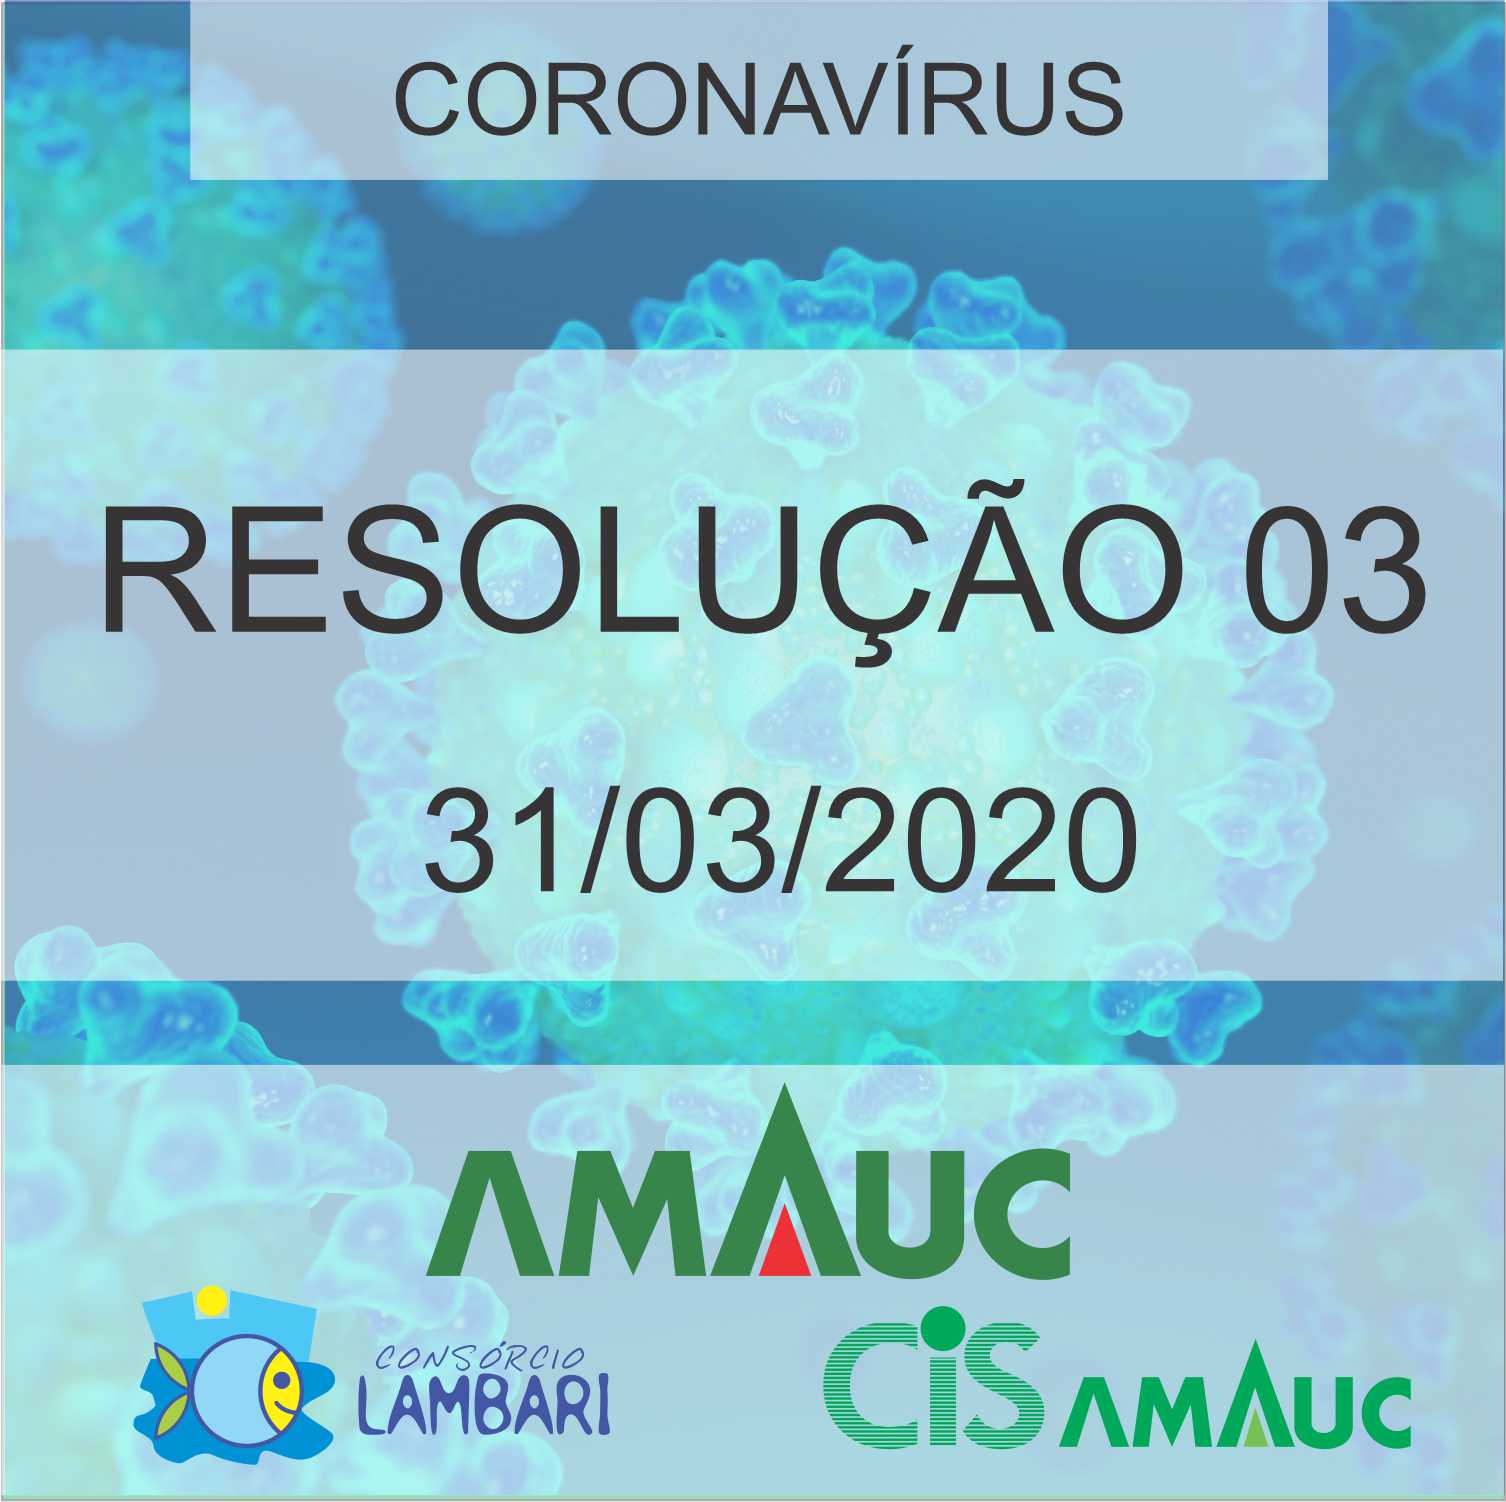 You are currently viewing Resolução Conjunta 03/2020, de 31 de março de 2020.